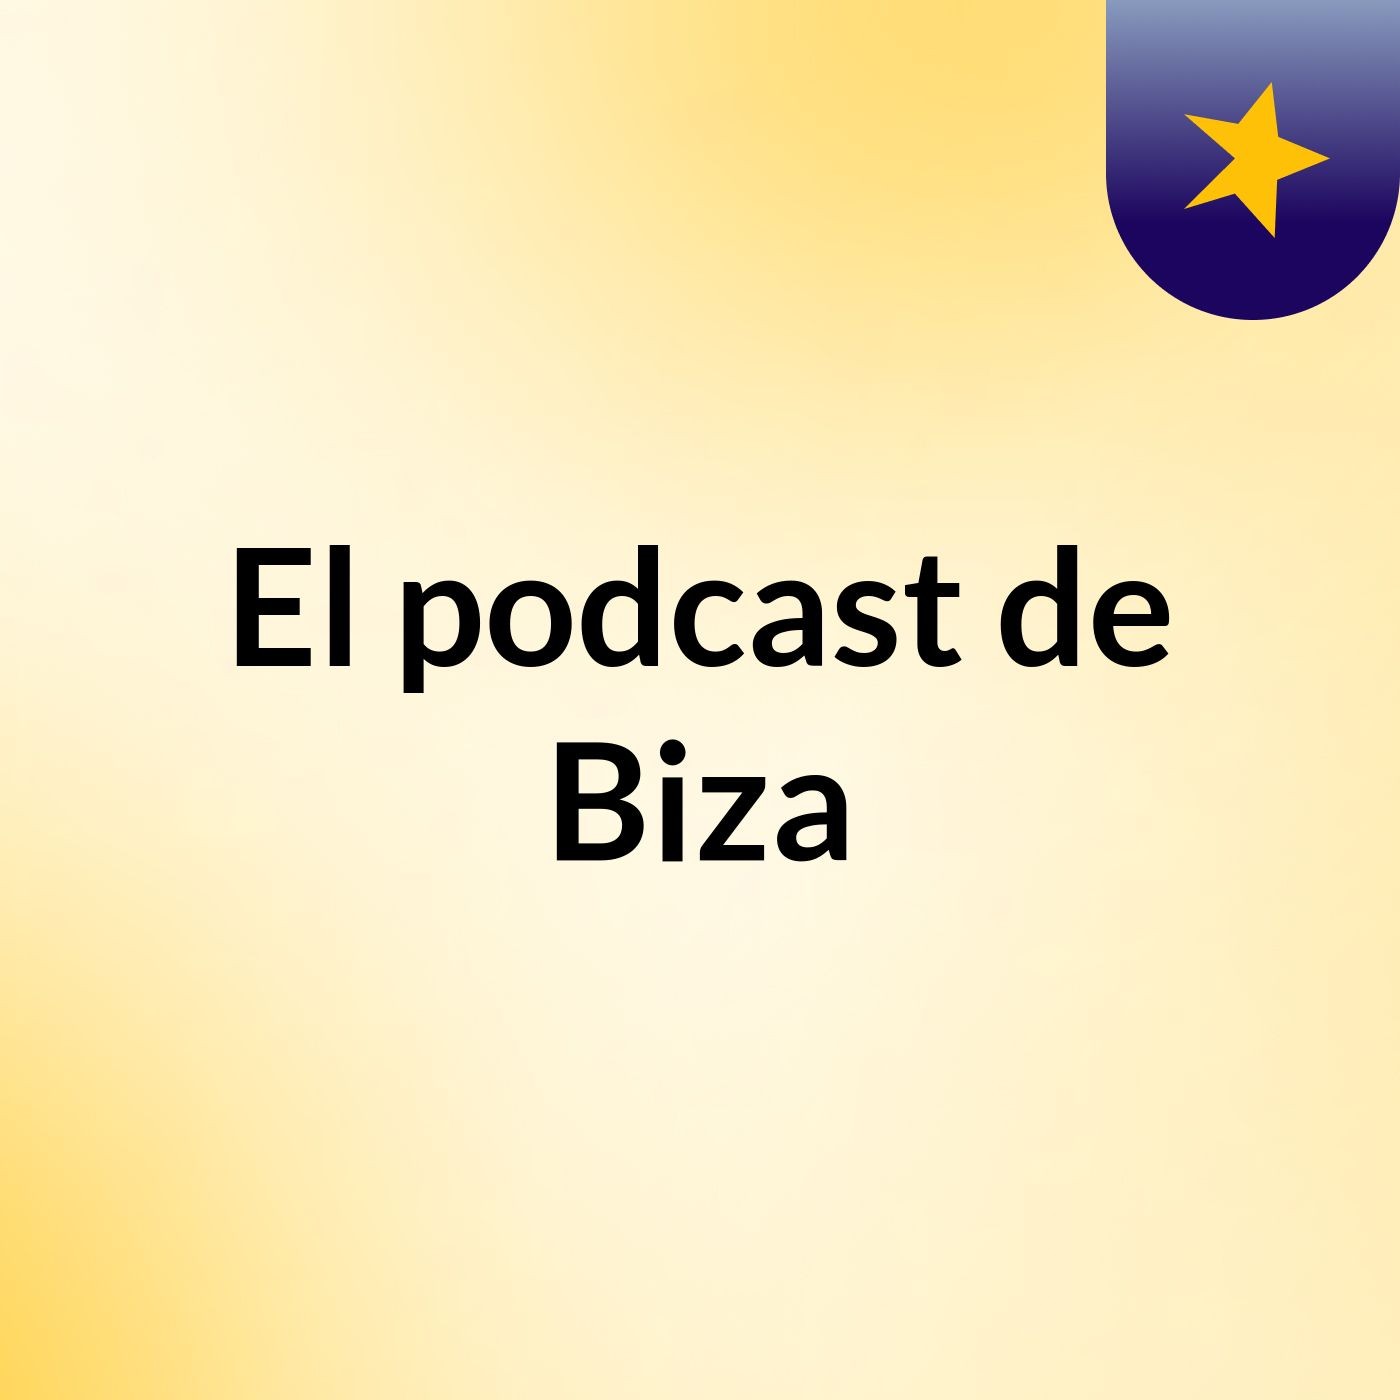 El podcast de Biza